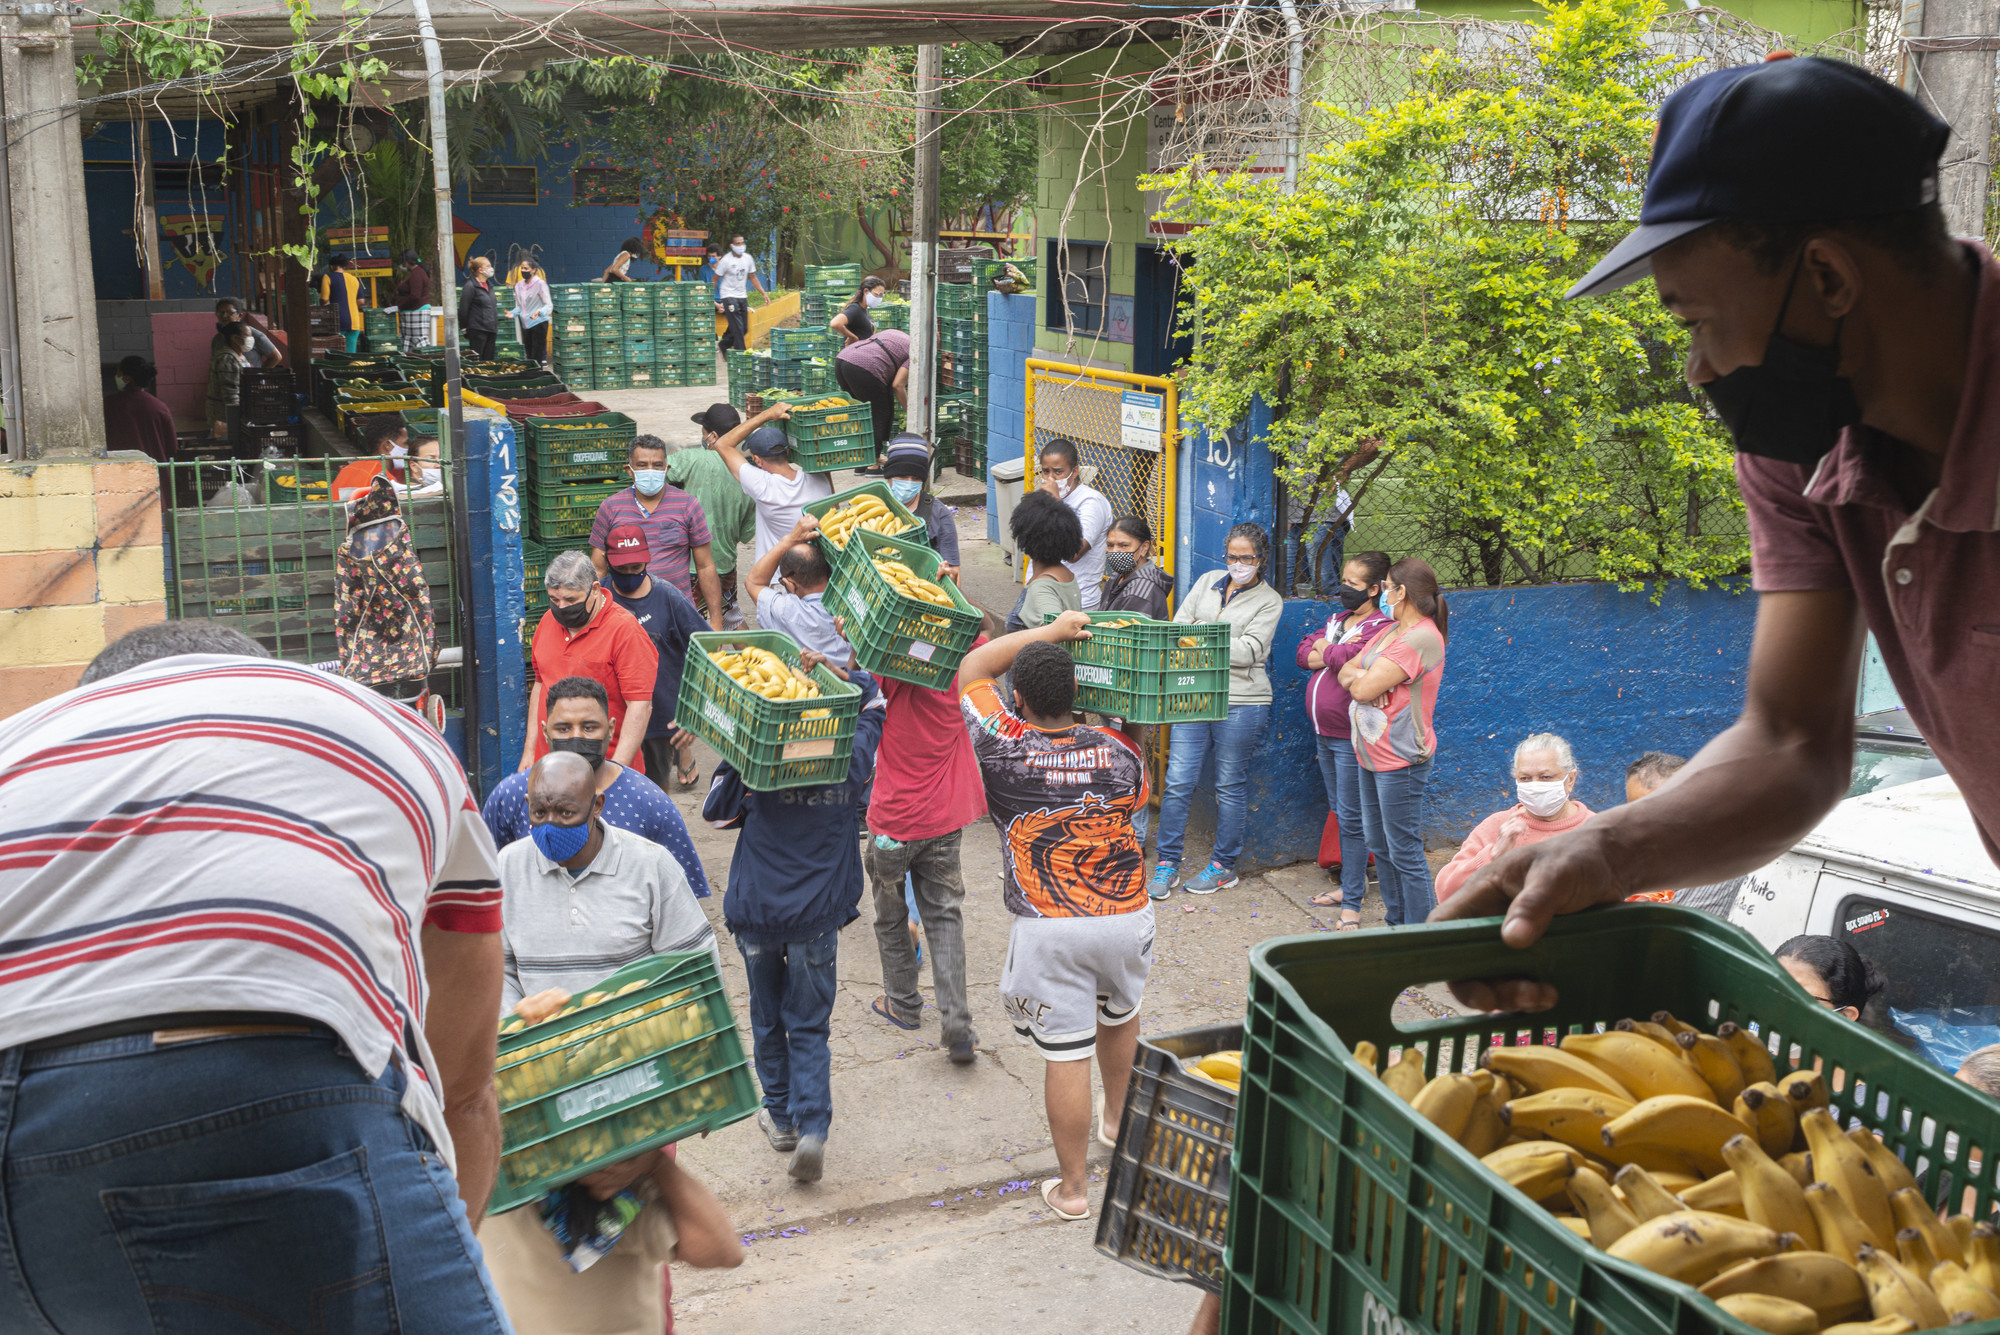 Distribuição de alimentos da Cooperquivale na comunidade de São Remo, na zona oeste de São Paulo|Rodrigo Kees/ISA